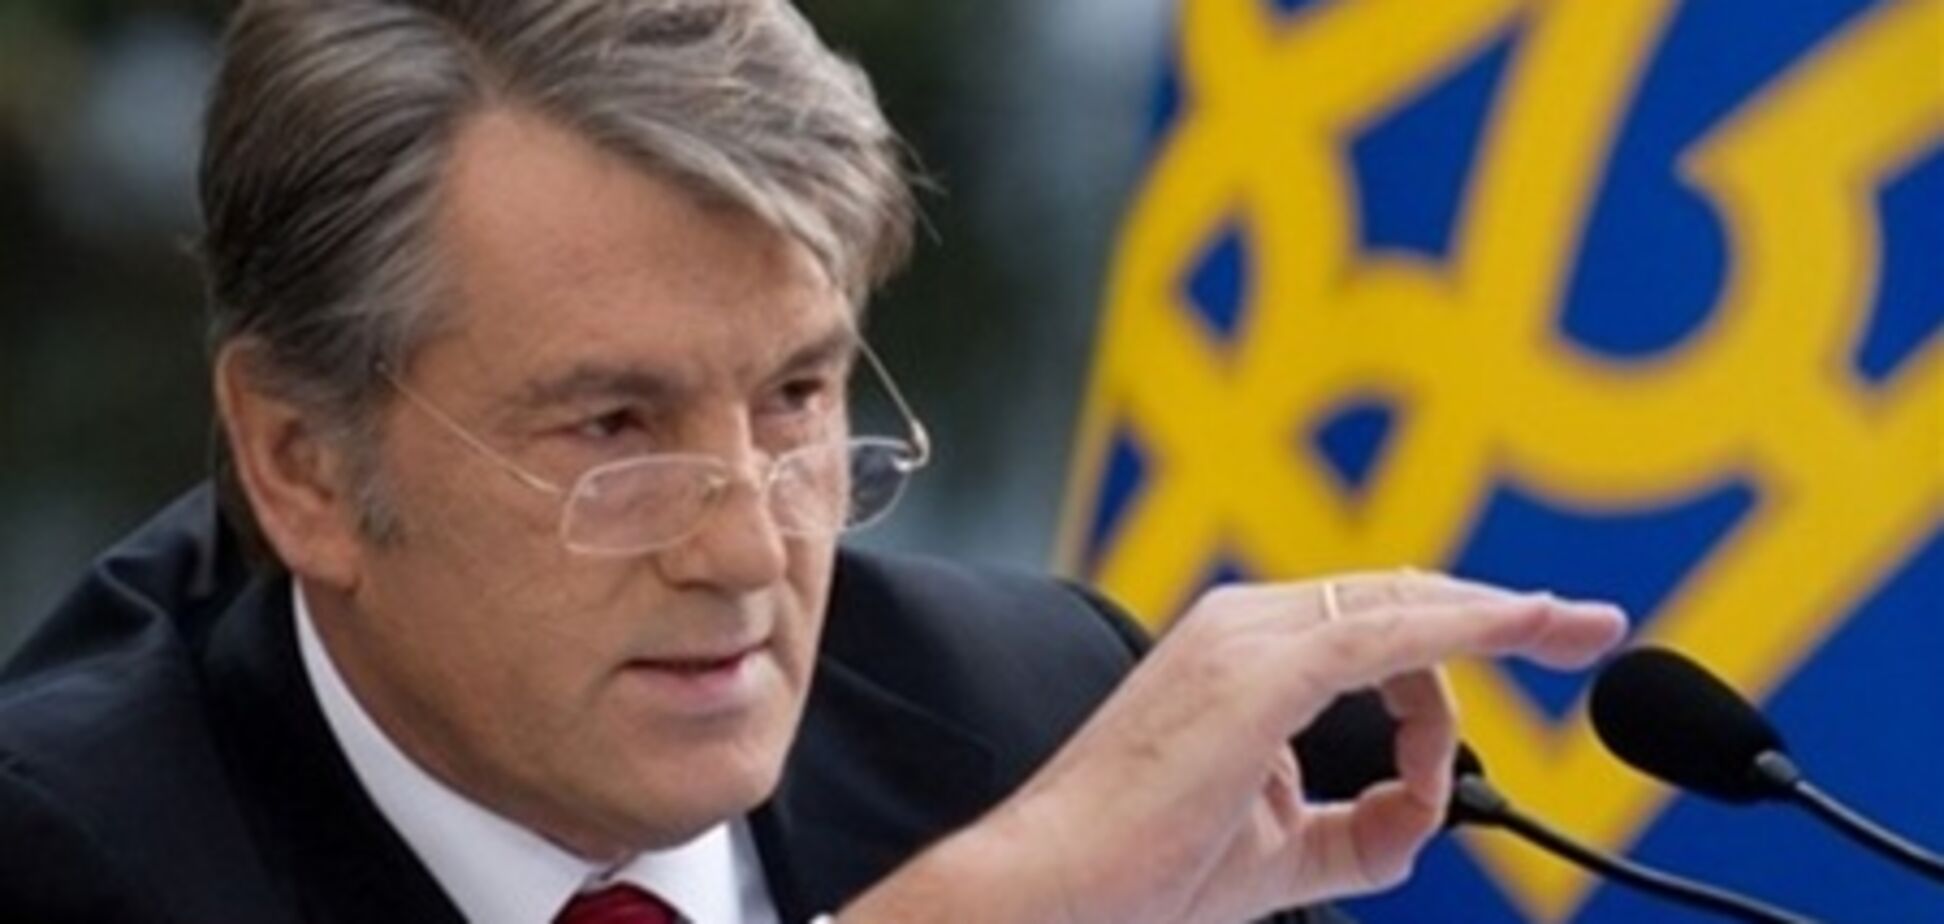 Ющенко попробует уладить ситуацию в 'Нашей Украине' 9 февраля